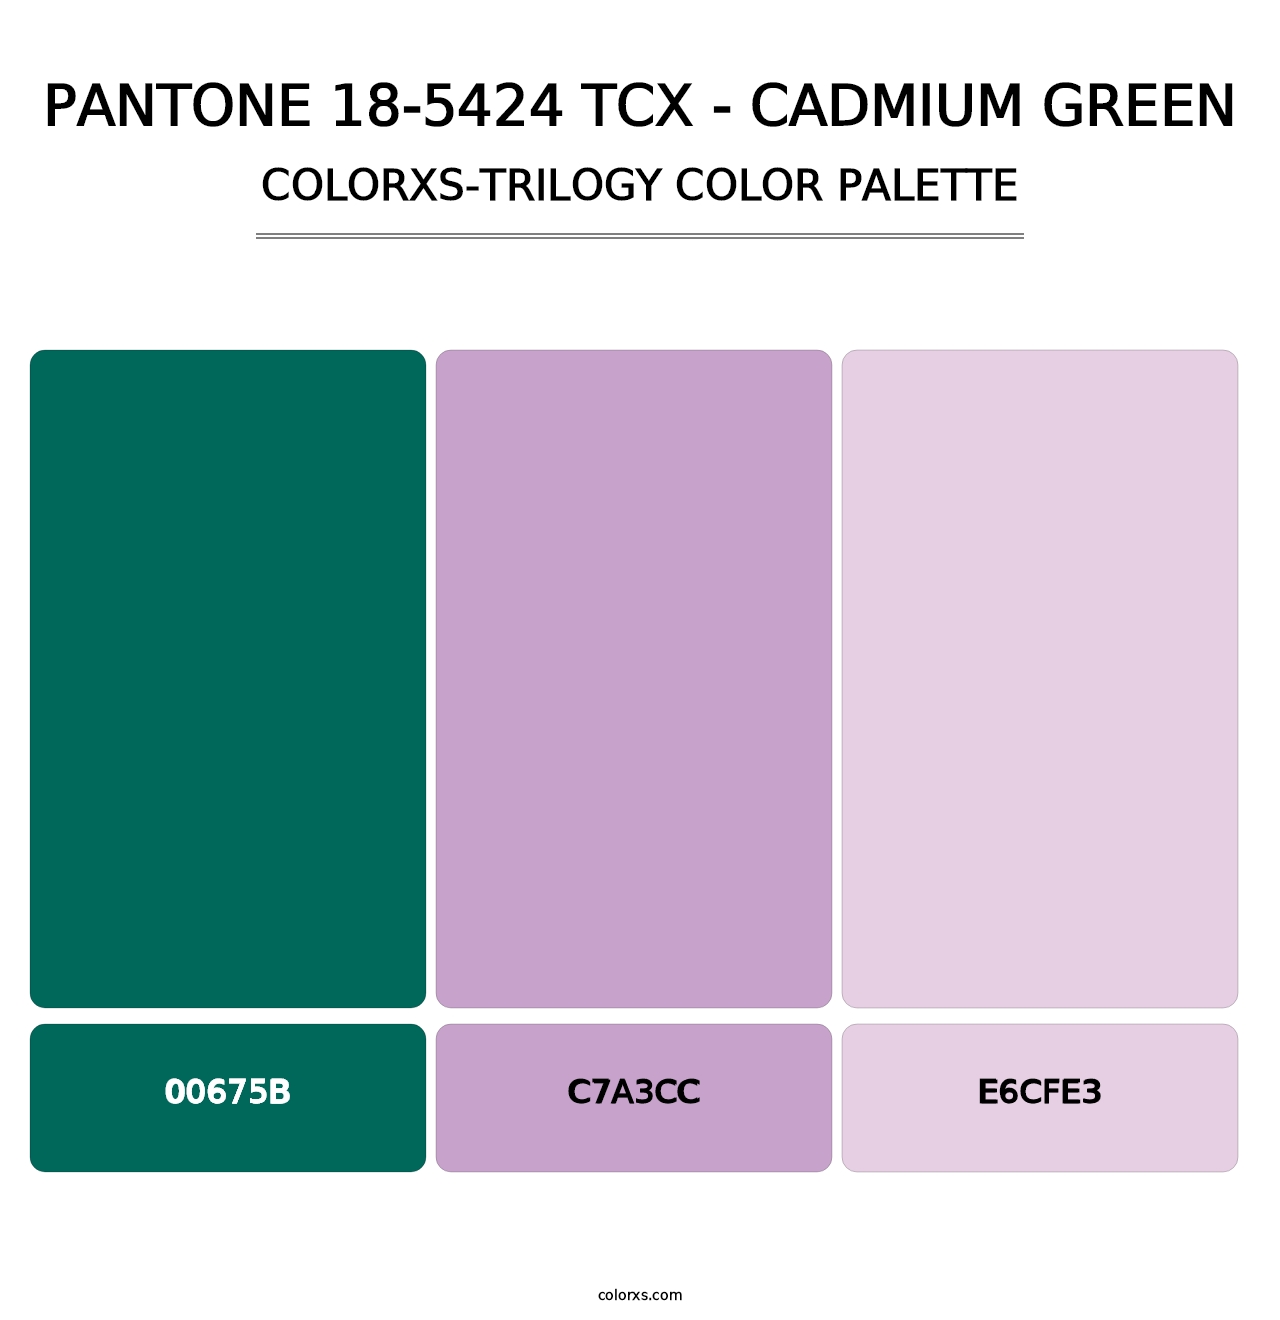 PANTONE 18-5424 TCX - Cadmium Green - Colorxs Trilogy Palette